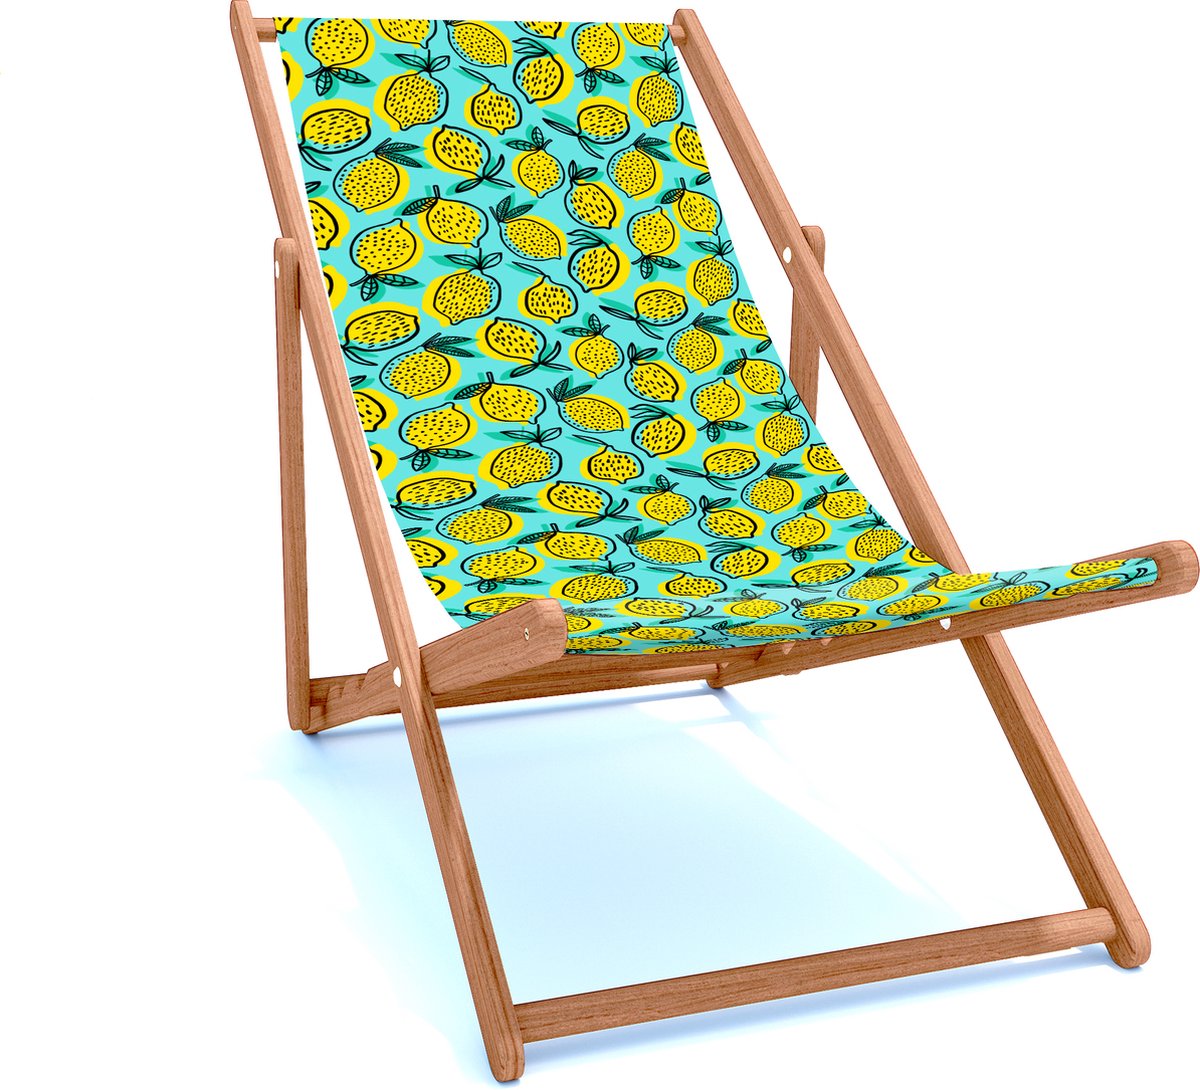 Holtaz Strandstoel Hout Inklapbaar Comfortabele Zonnebed Ligbed met verstelbare Lighoogte houten frame met stoffen Zomer